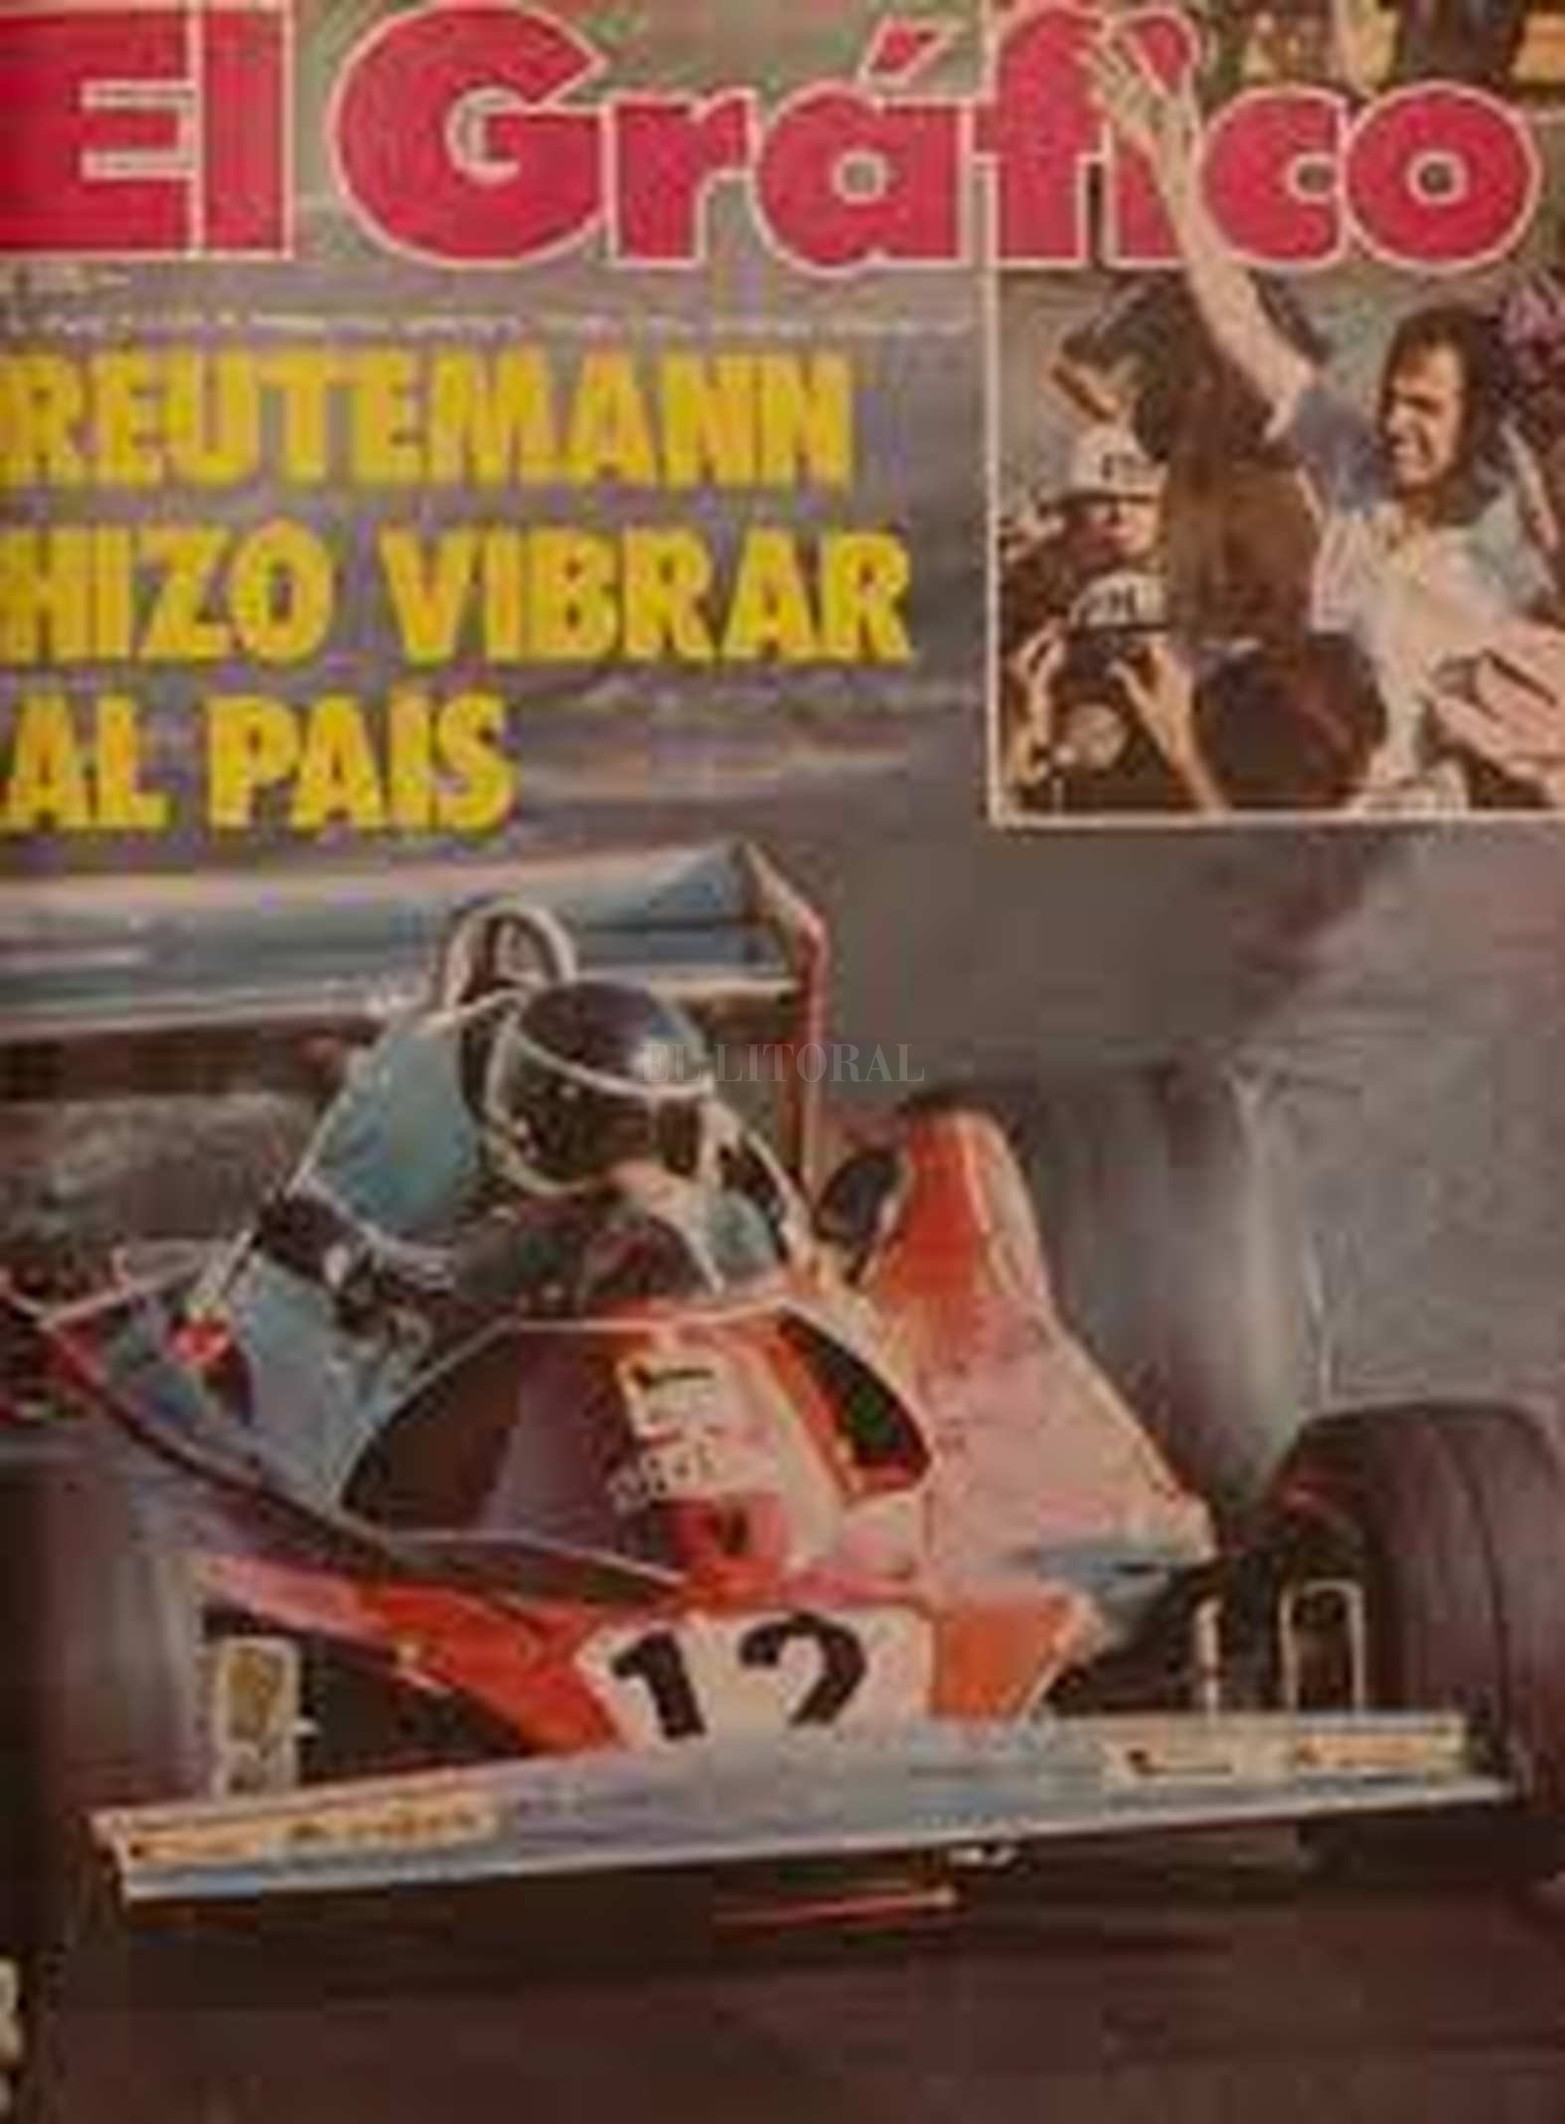 Tapa de la revista El Gráfico de enero de 1977. "Reutemann hizo vibrar al país" dice la publicación. Unos días antes había hecho podio con la Ferrari en el autódromo de Buenos Aires.